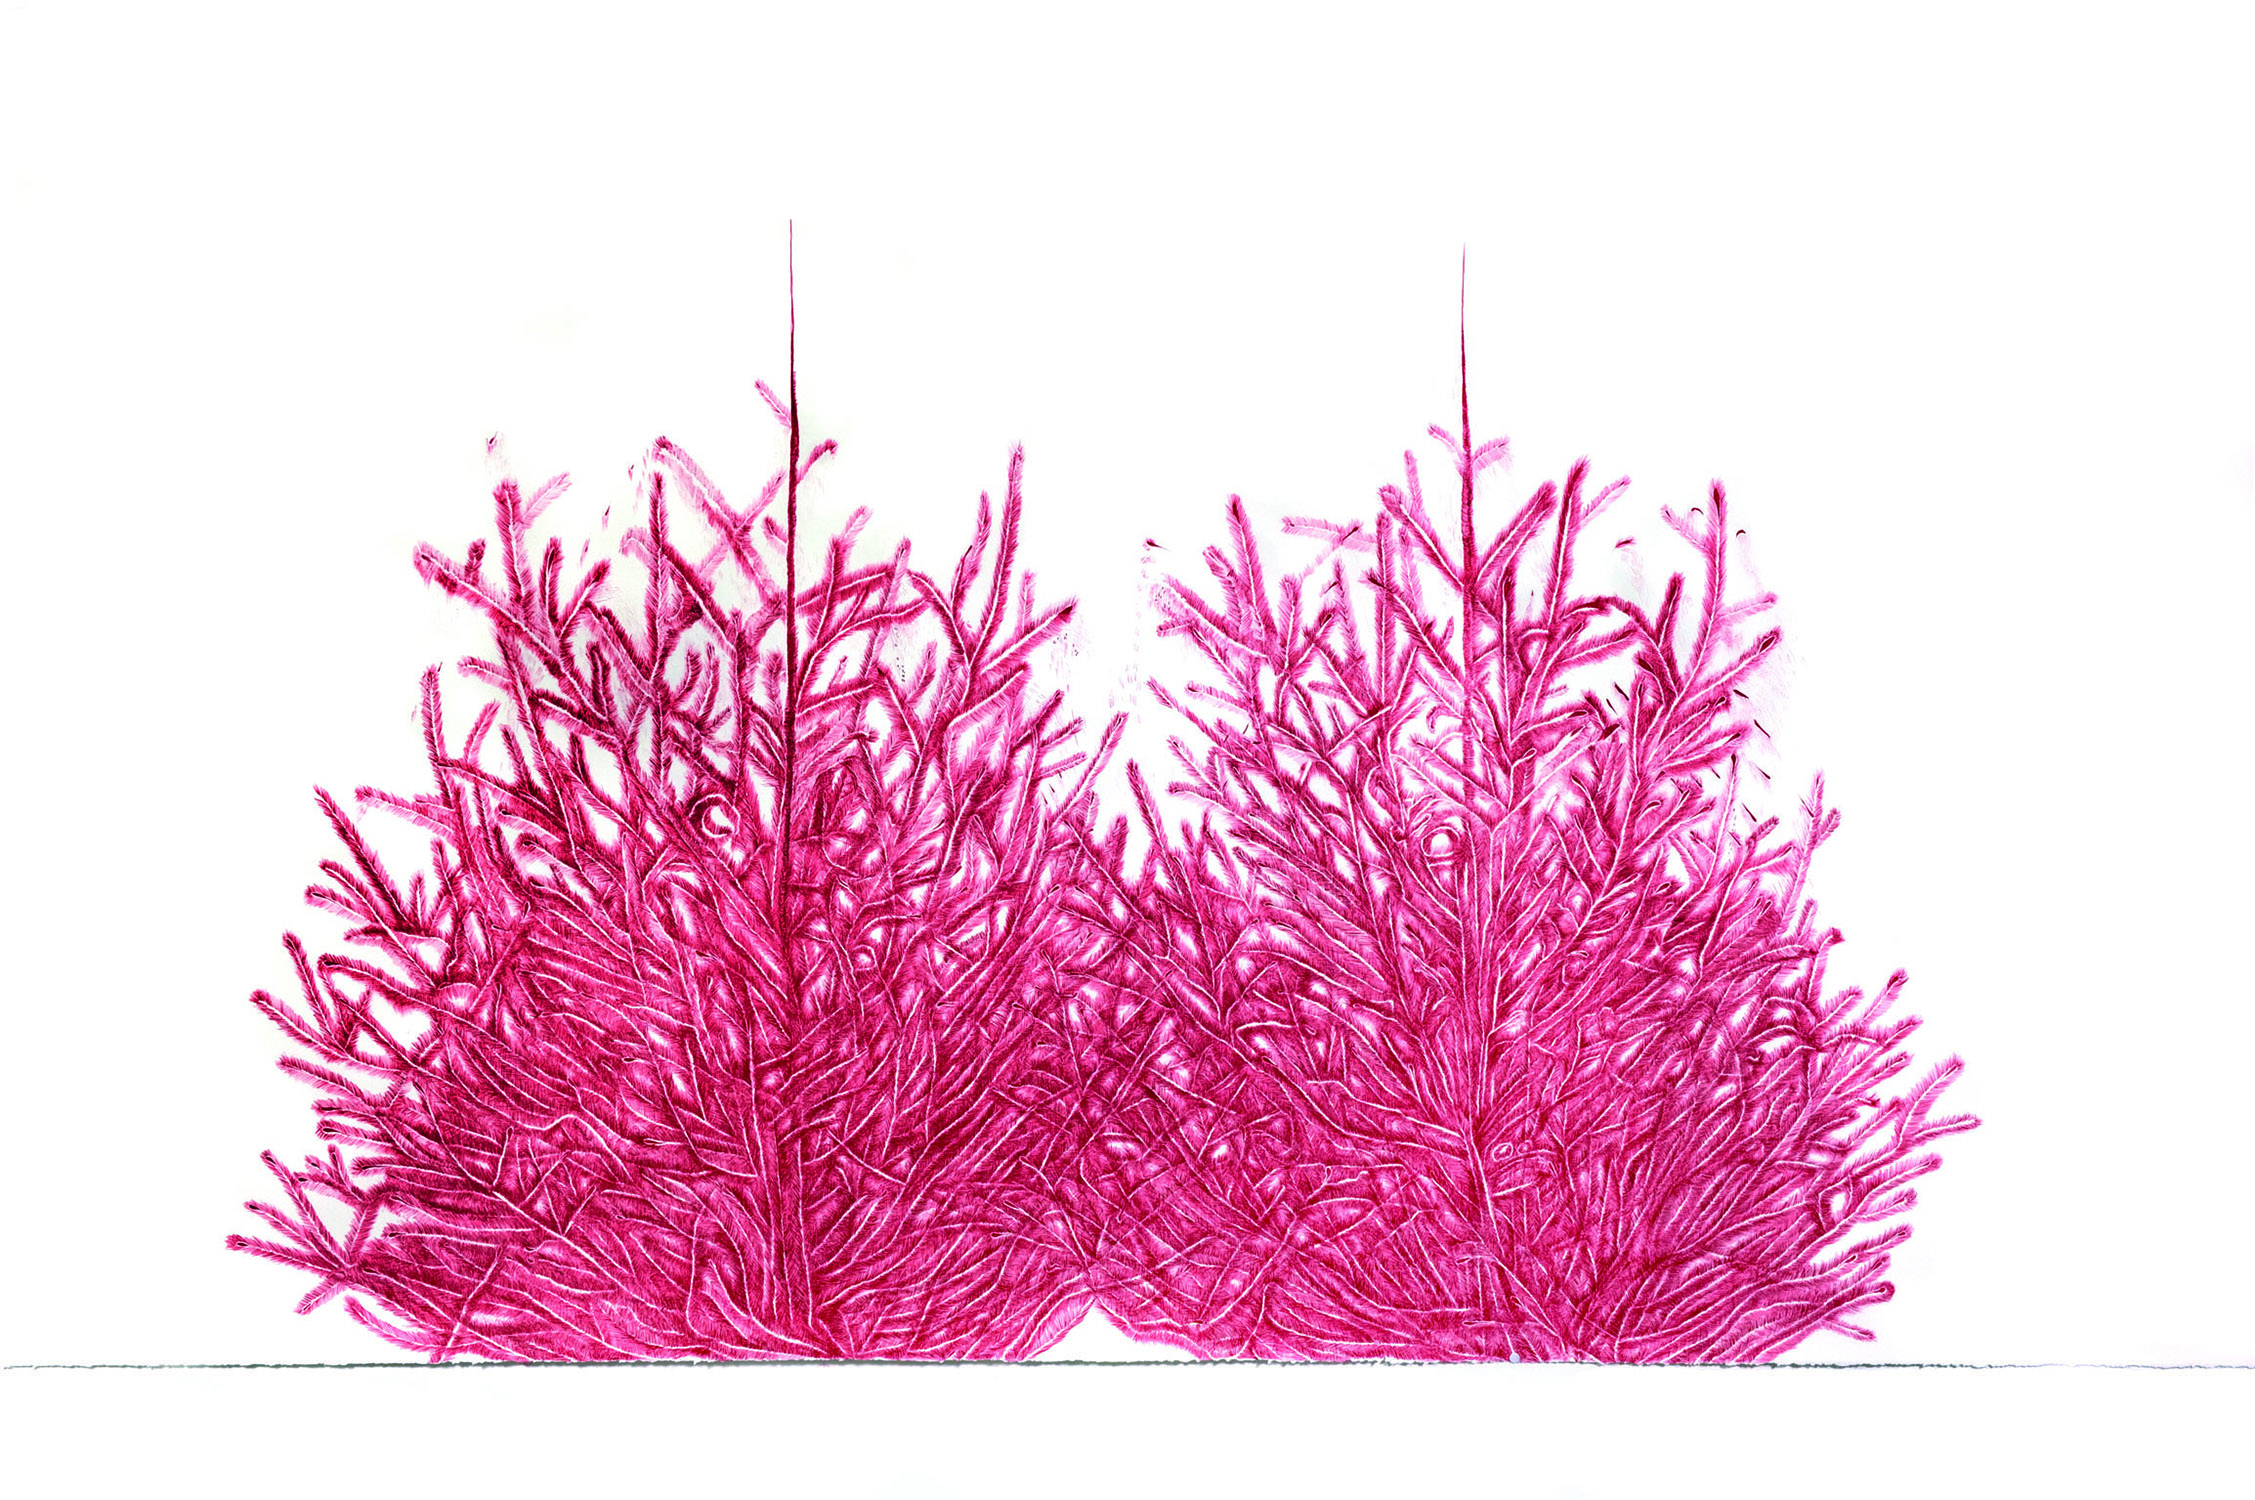 Rottannen, Filzstift auf Papier, 2012, 220 × 114 cm